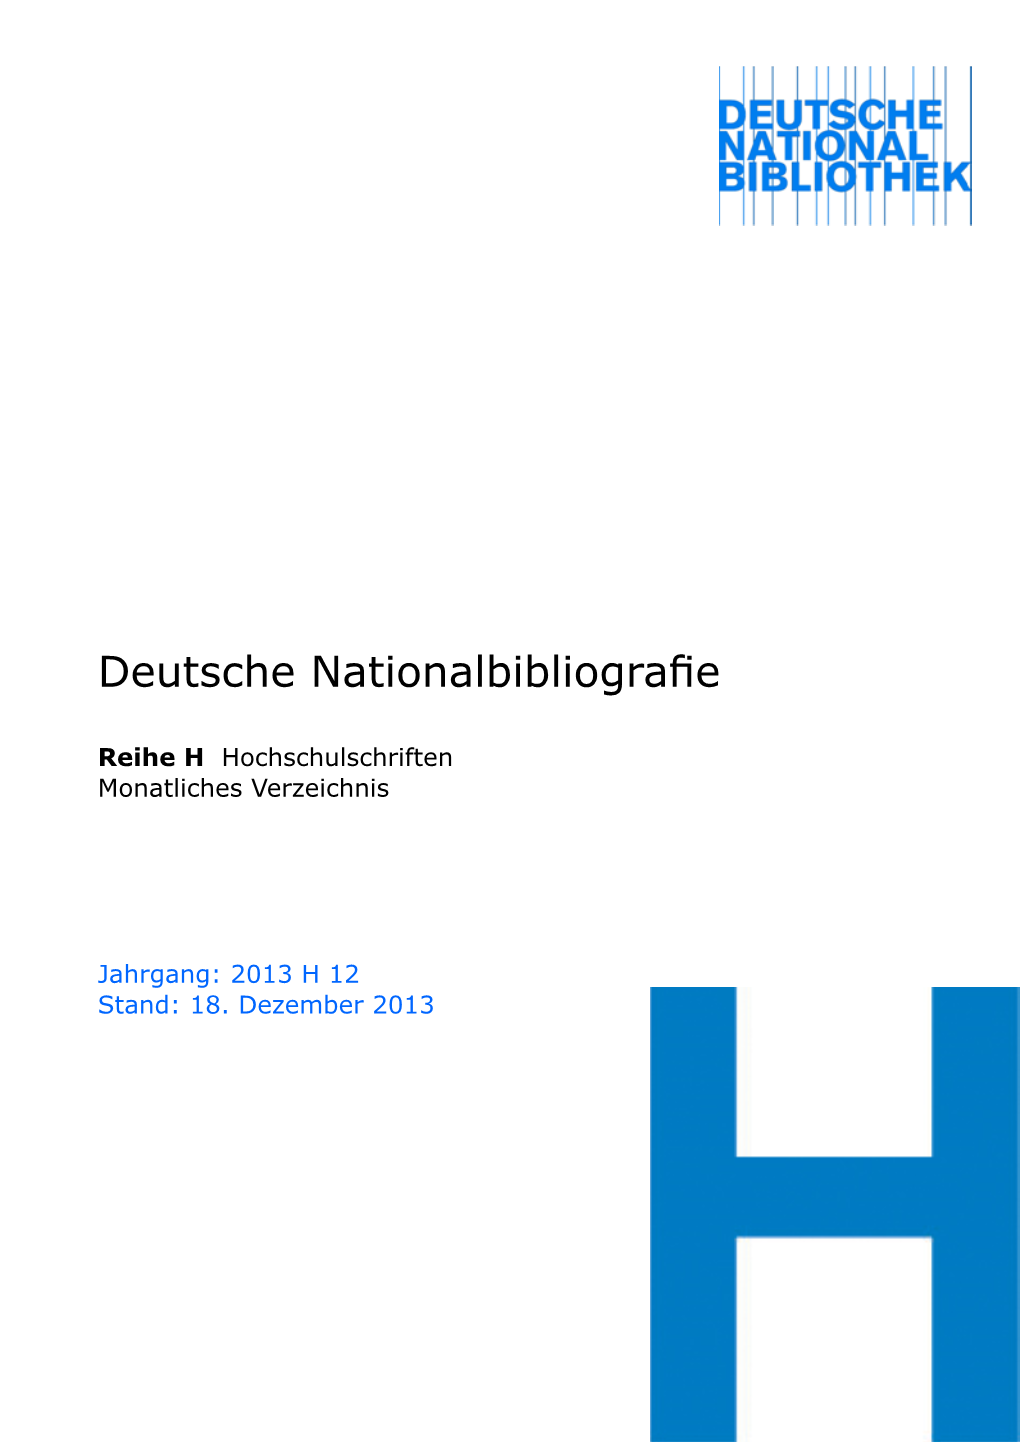 Deutsche Nationalbibliografie 2013 H 12